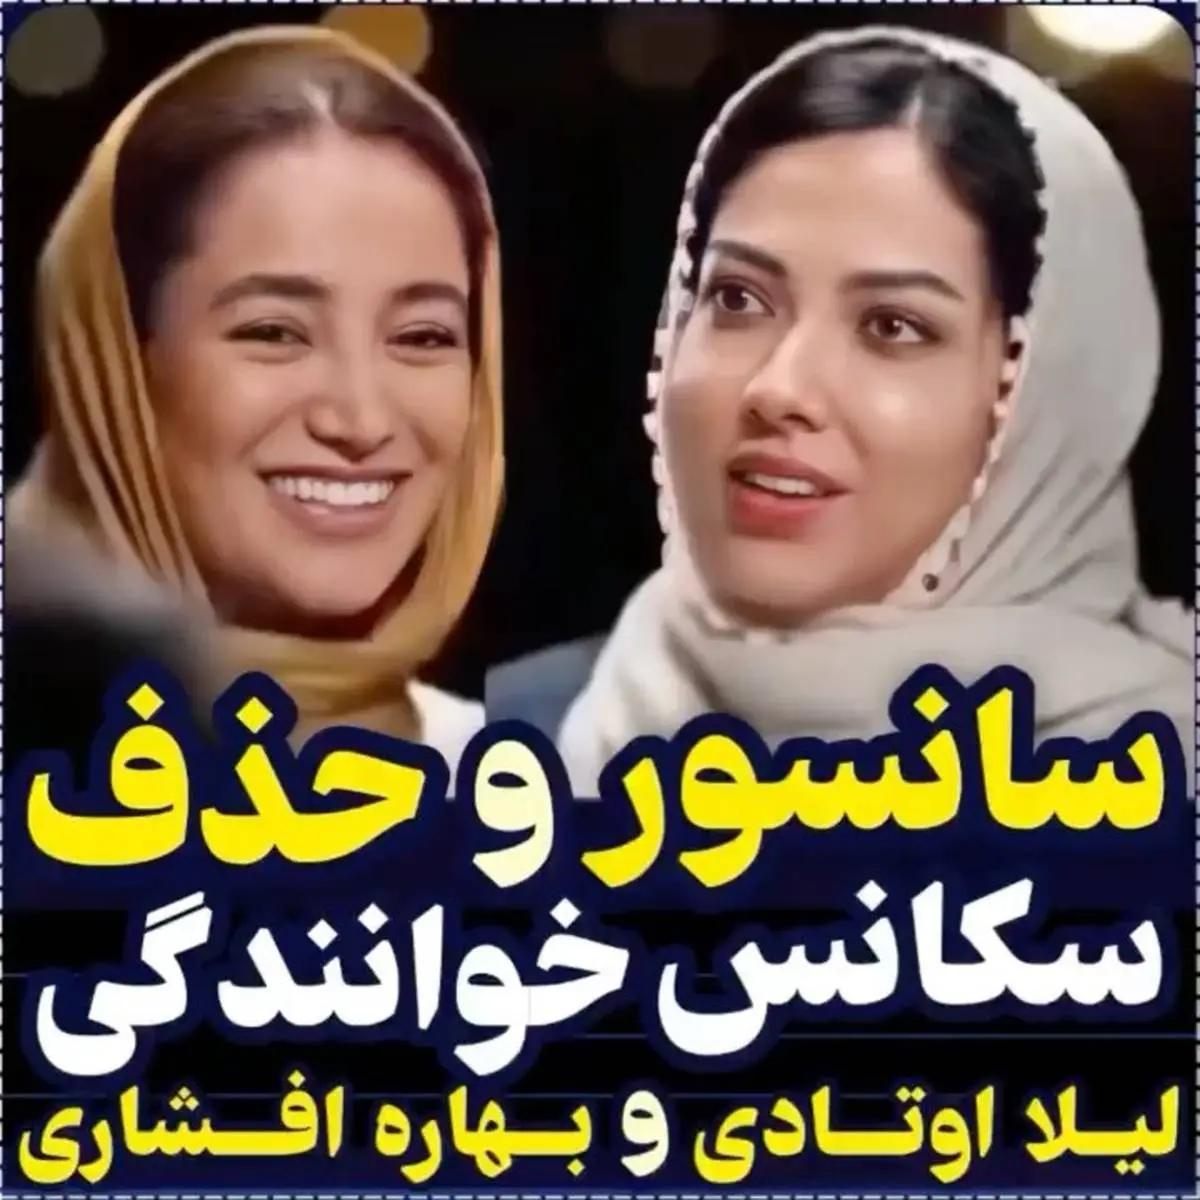 سانسور رقص بهاره افشاری در تلوزیون | عکسهای بهاره افشاری در خارج